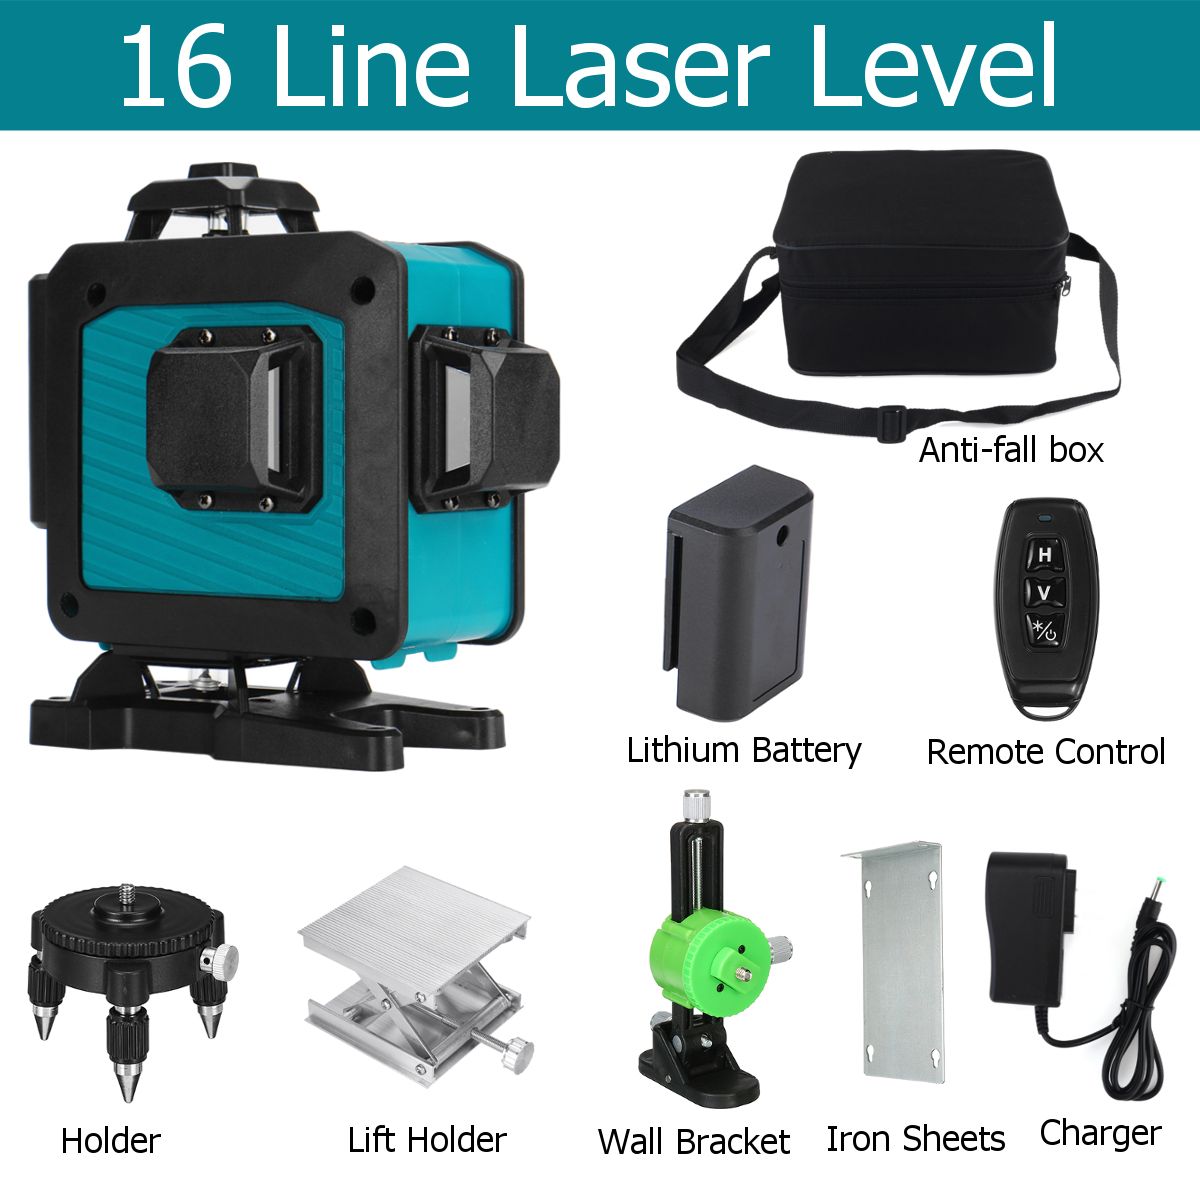 16-Line-Laser-Level-Green-Light-360deg-Self-Leveling-Cross-Horizontal-Vertical-1700308